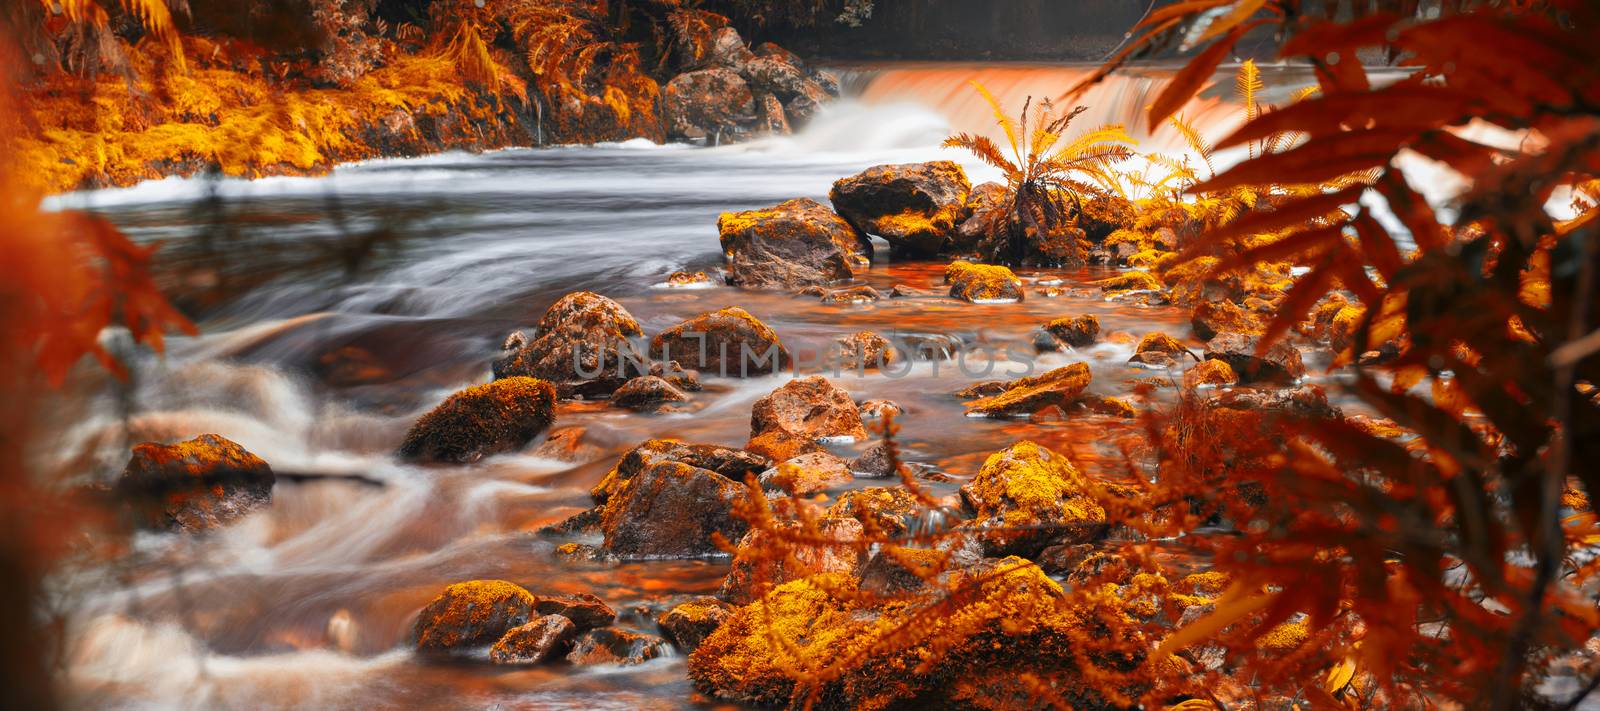 Newell Creek in Tasmania by artistrobd